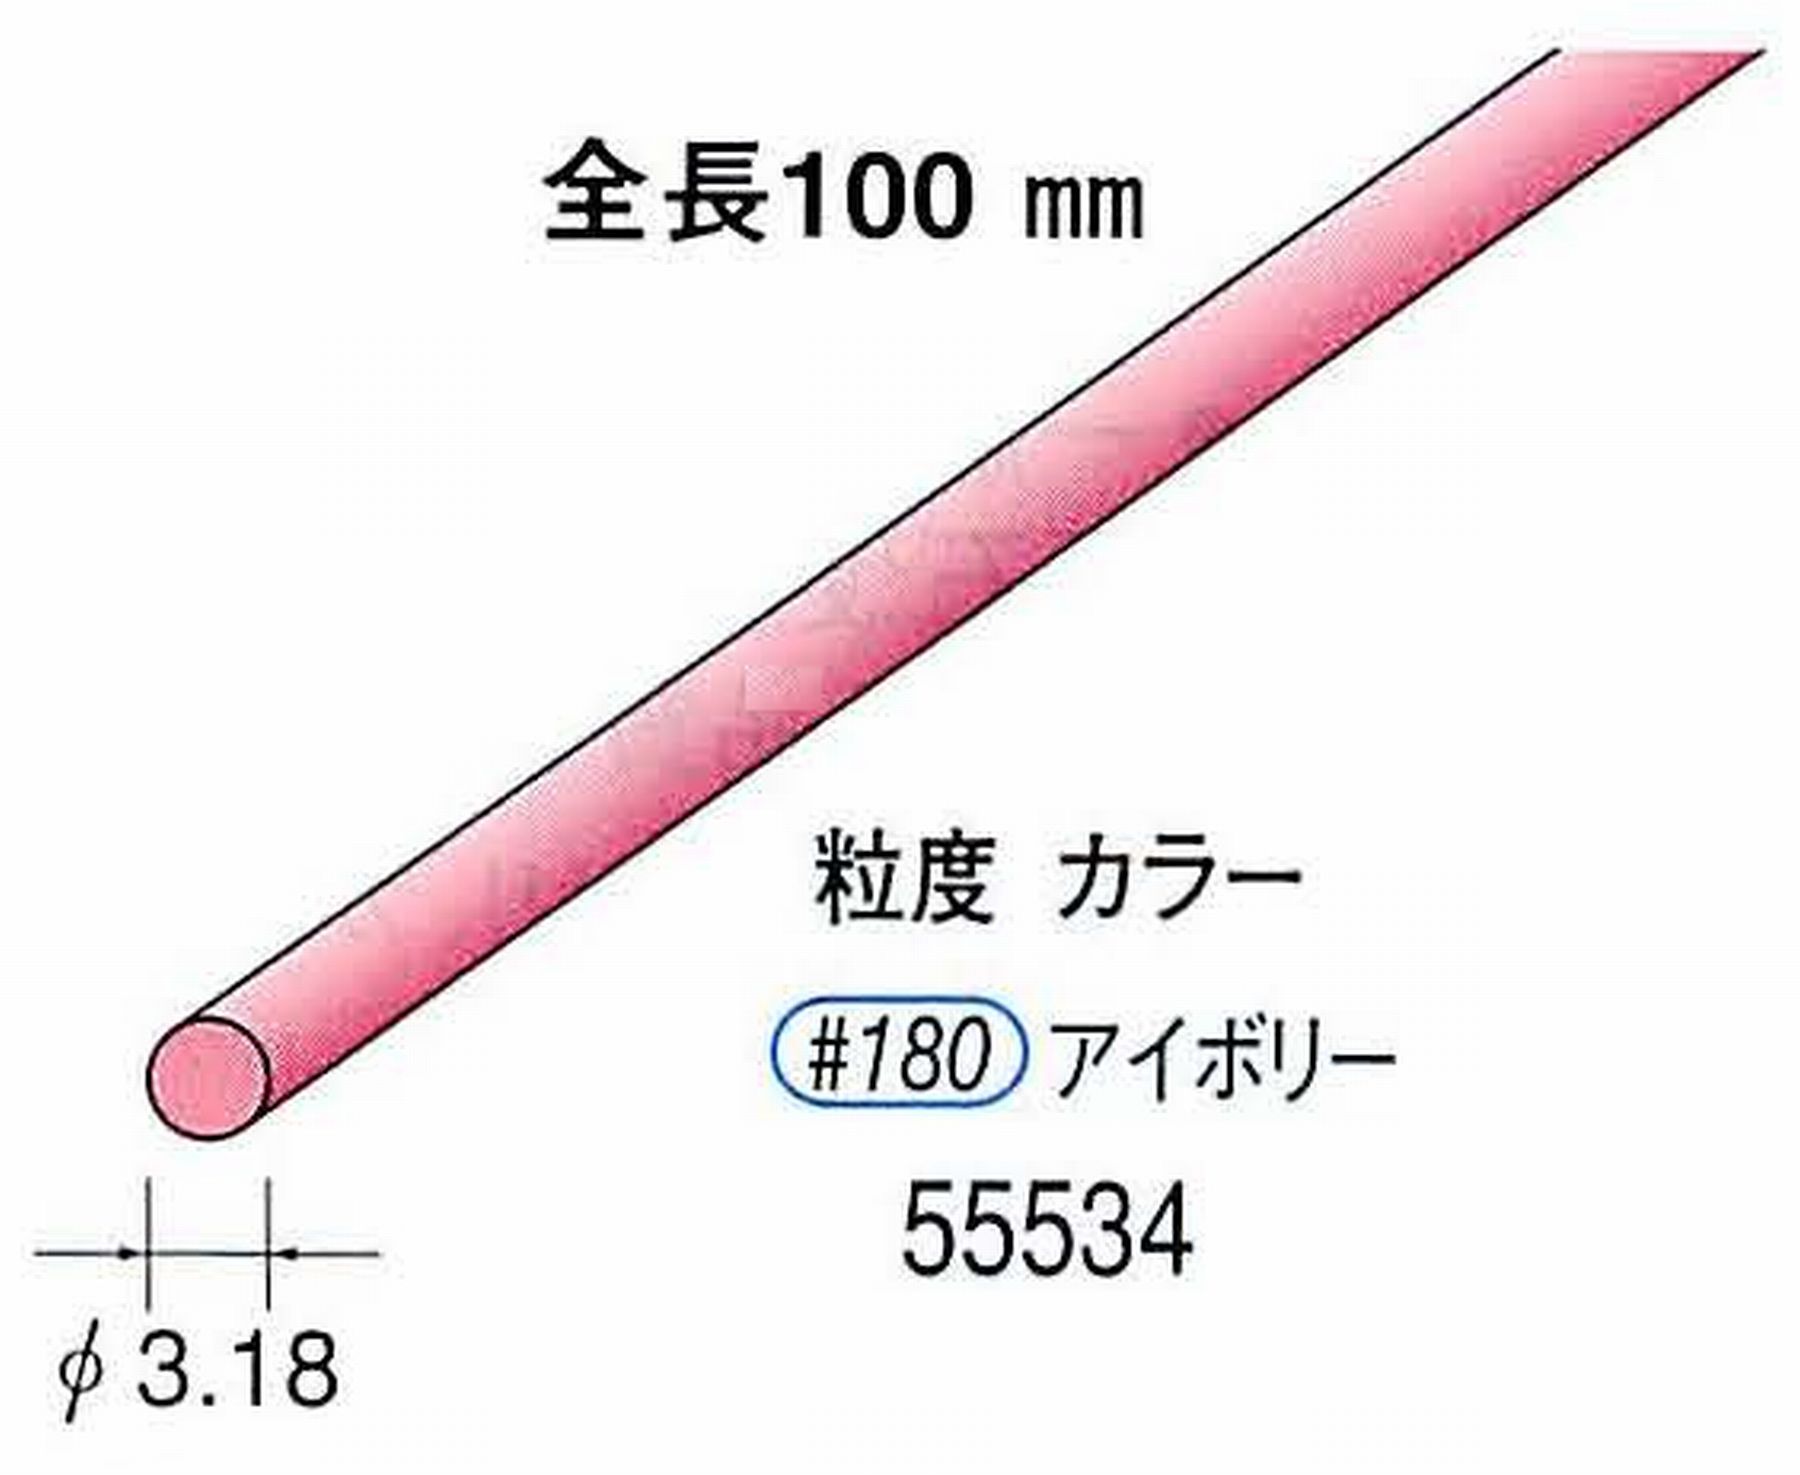 ナカニシ/NAKANISHI セラファイバー砥石 全長100mm アイボリー φ3.18mm 55534